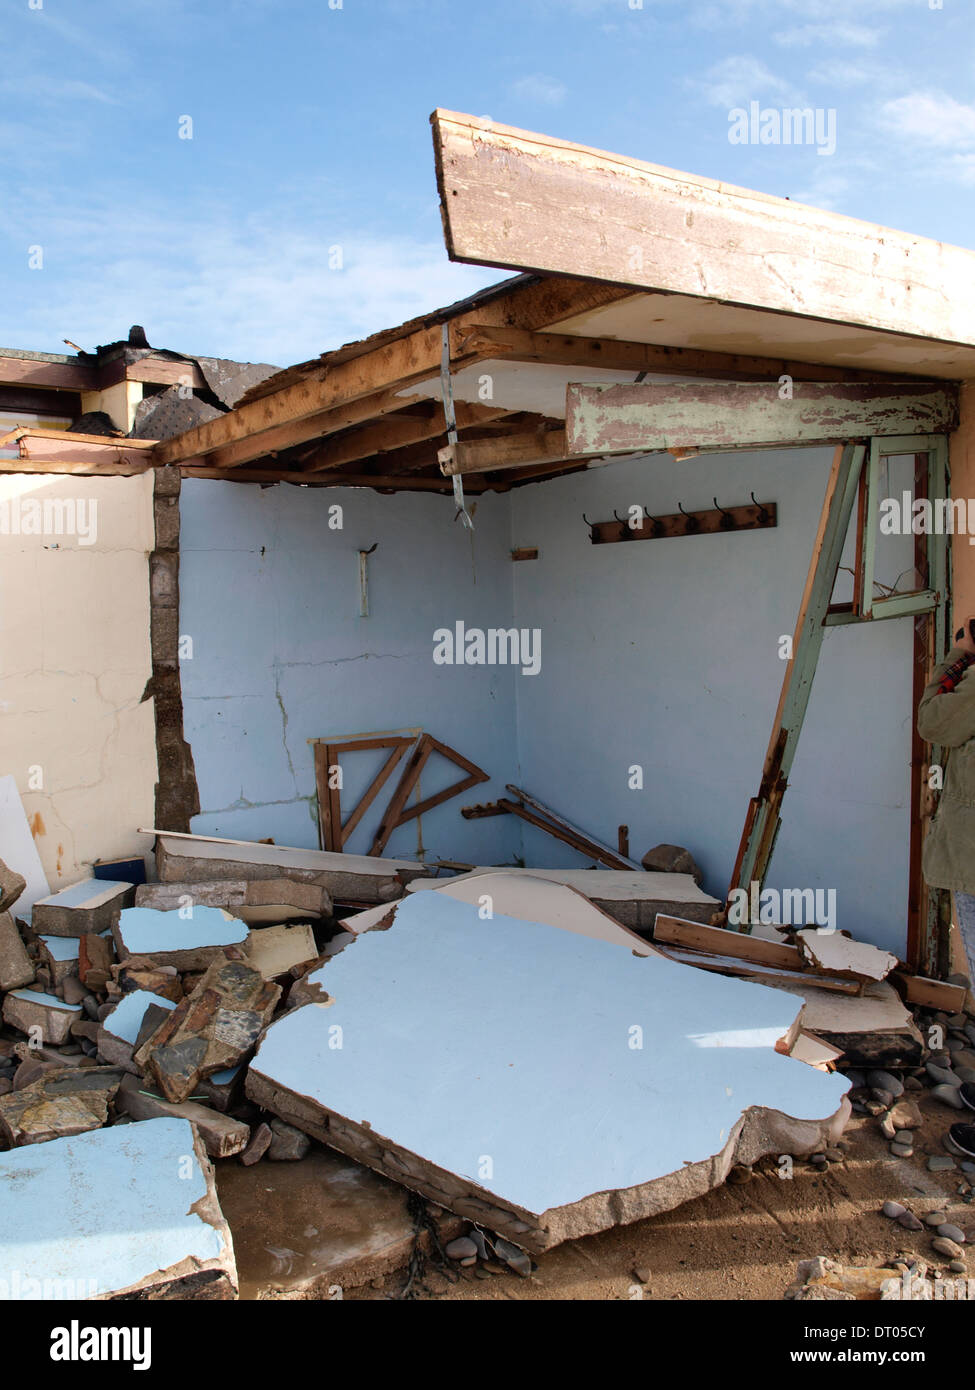 Cabaña destruida fotografías e imágenes de alta resolución - Alamy